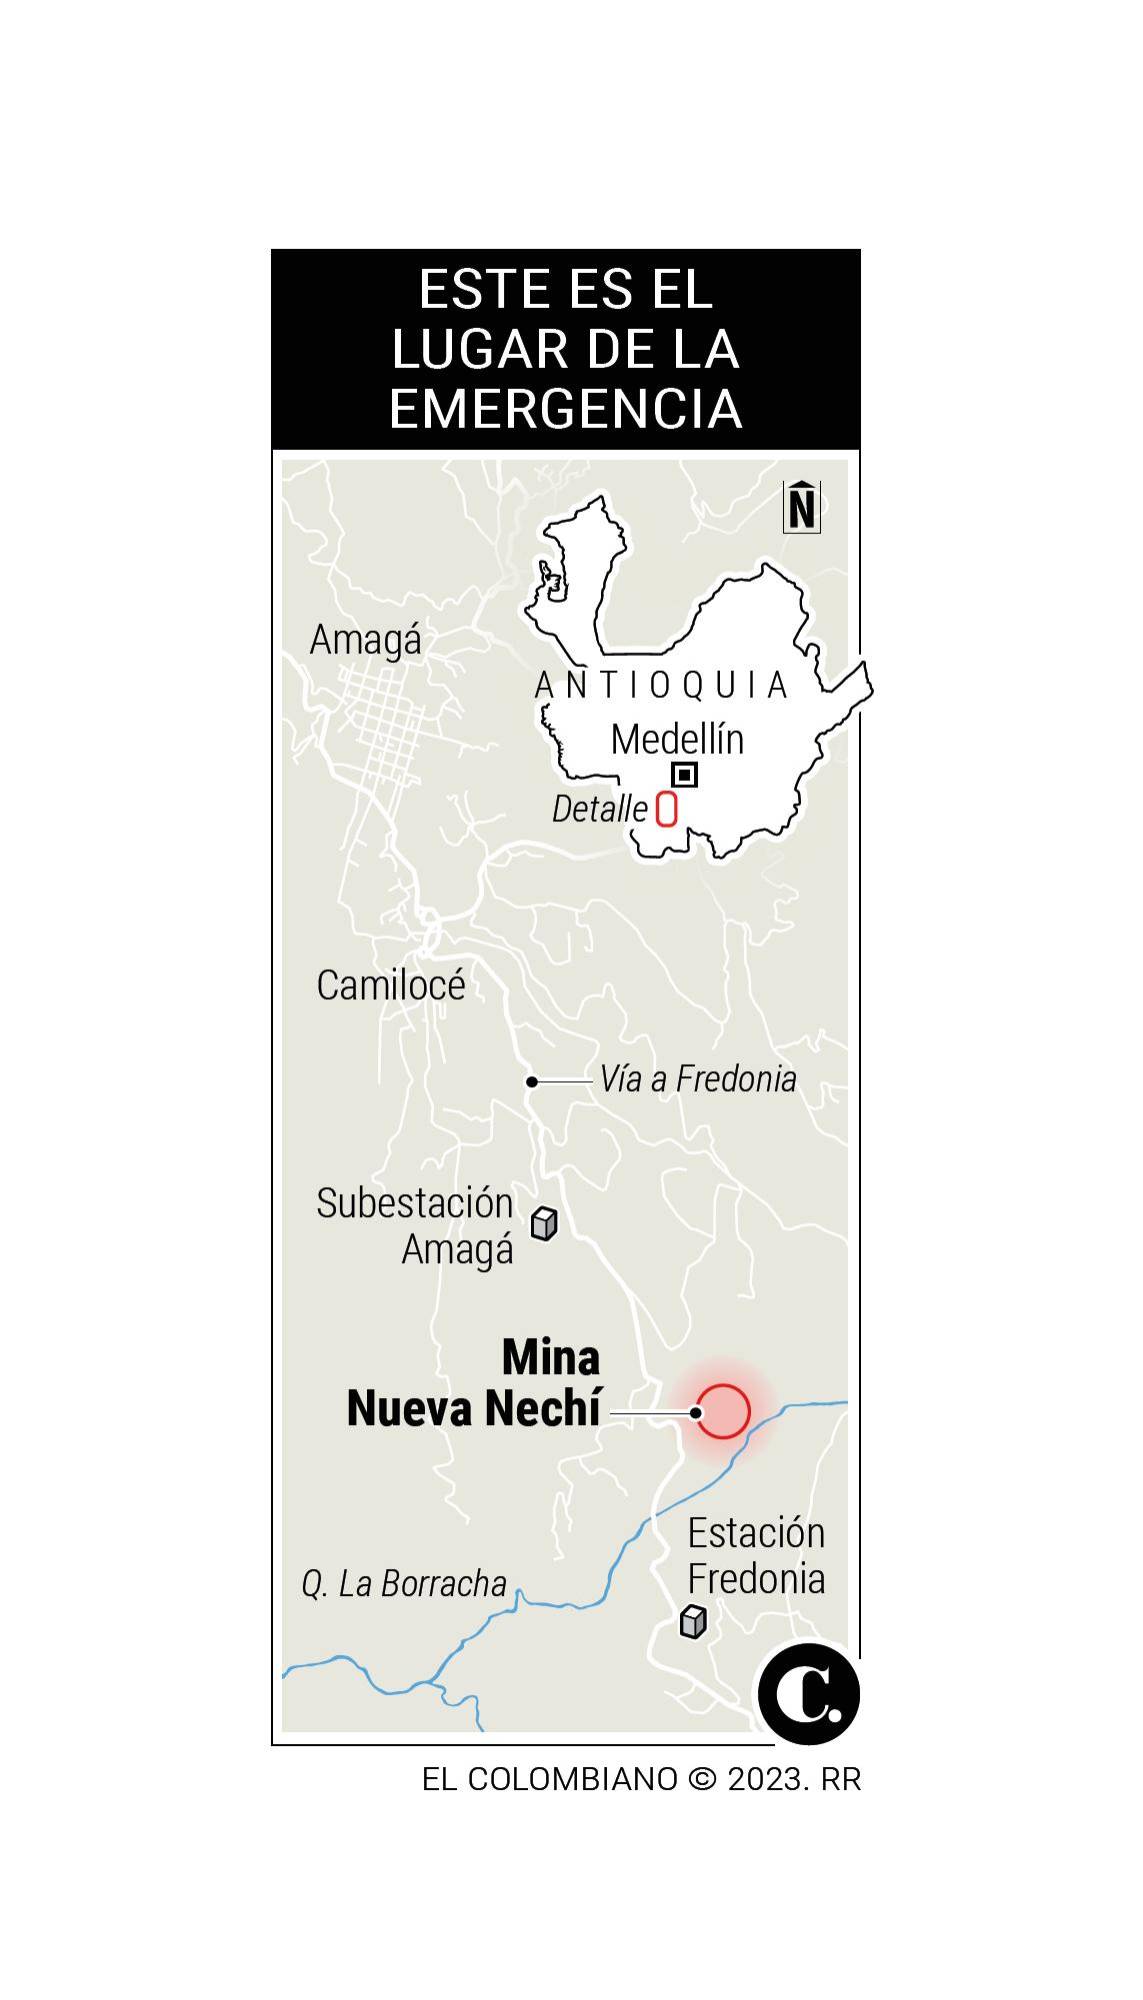 “Lo esperaré afuera de la mina hasta el final, lo amaré por siempre”: la angustiosa búsqueda de mineros atrapados en Amagá